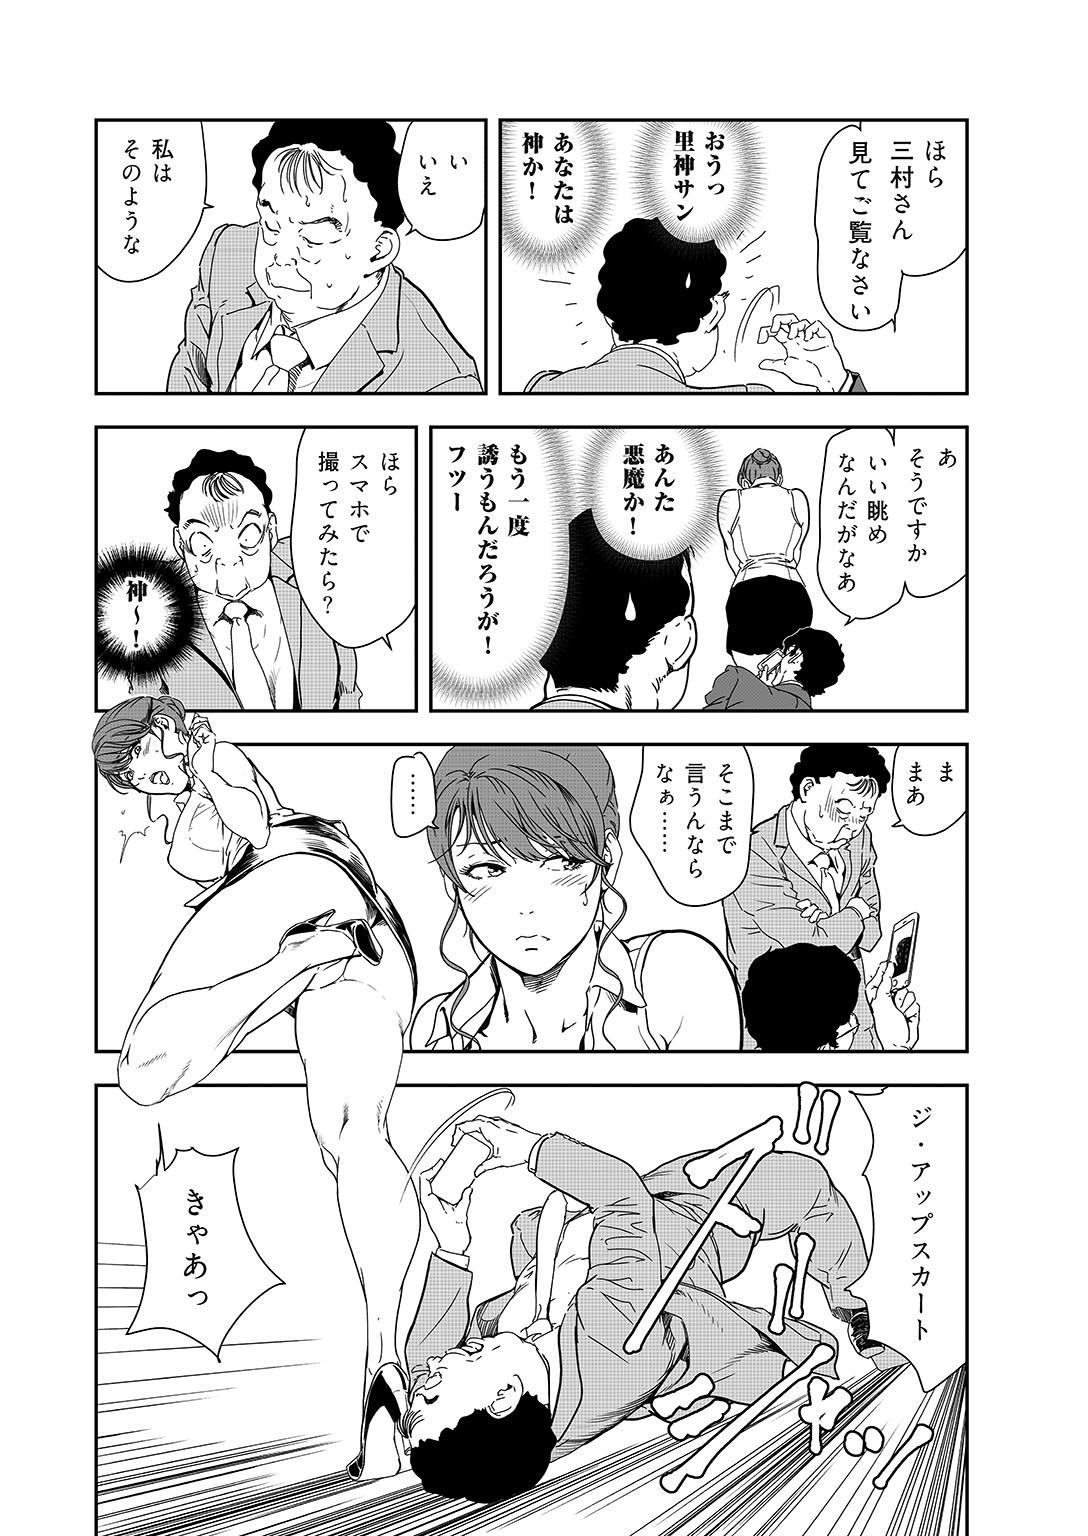 Highschool Nikuhisyo Yukiko 38 Funny - Page 11